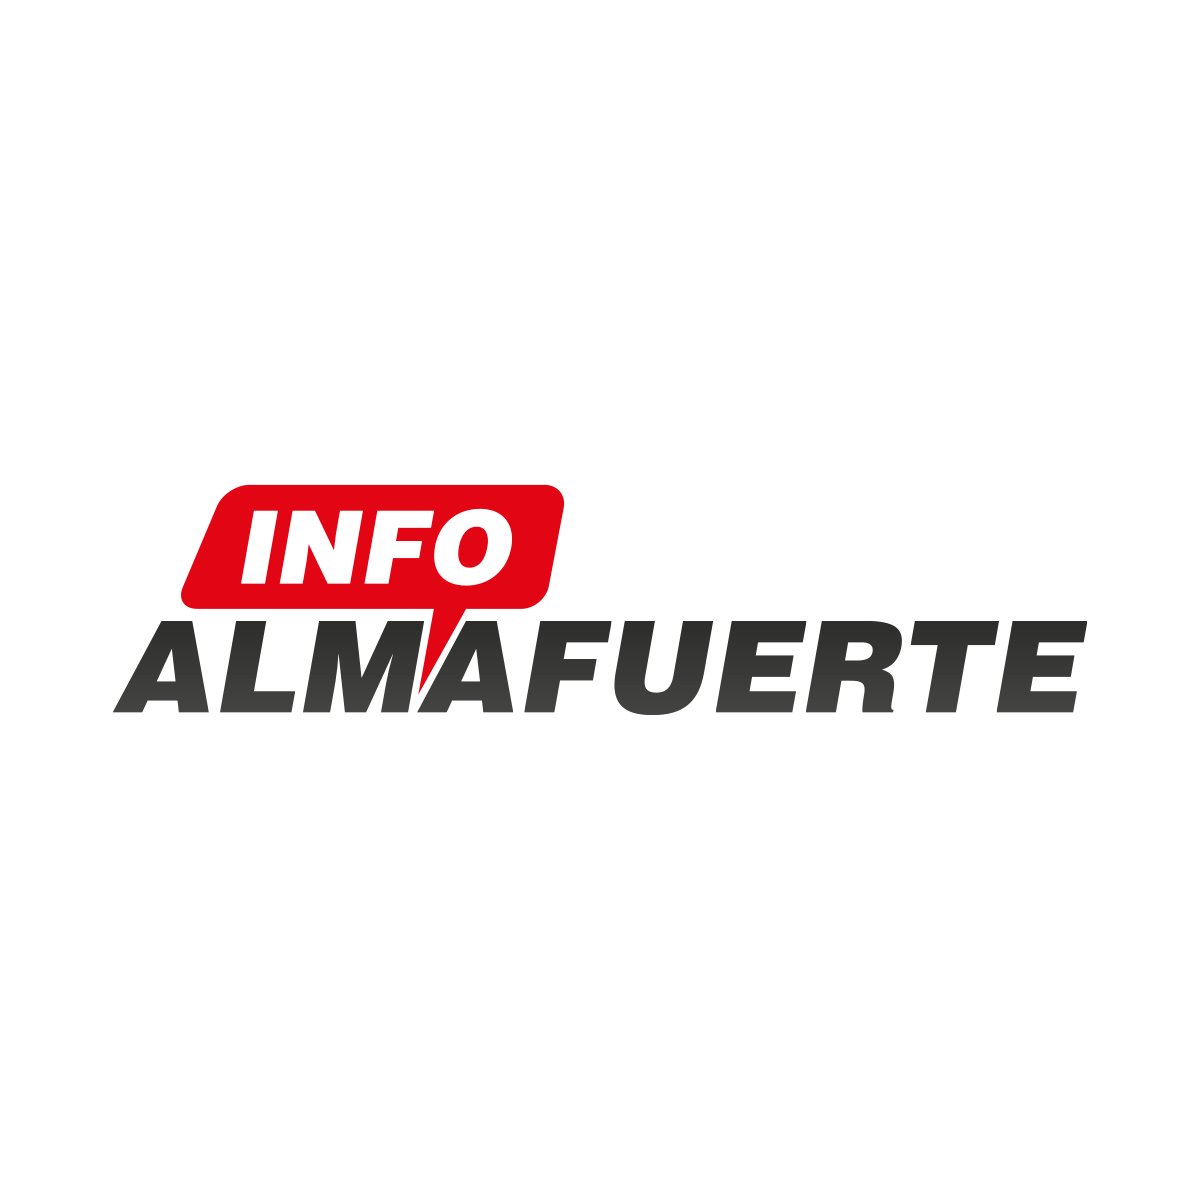 Somos un medio de Comunicación en Almafuerte, Córdoba, Argentina. Unimos la región con los hechos más importante. Bienvenido.